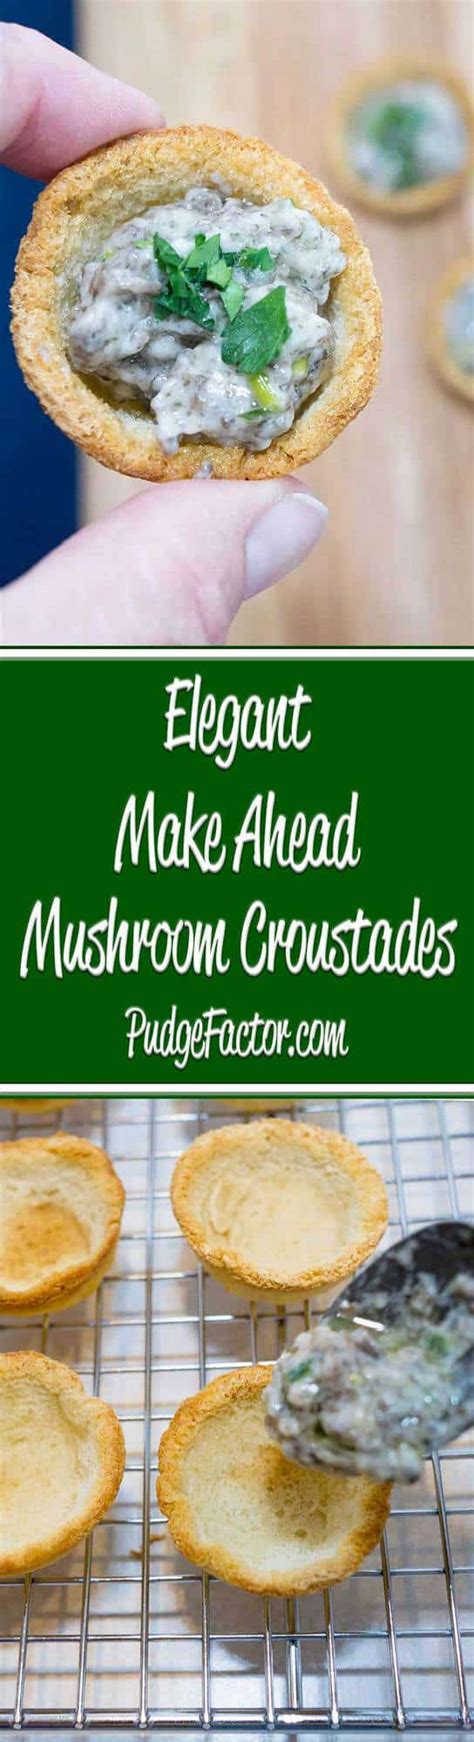 elegant-make-ahead-mushroom-croustades-pudge-factor image